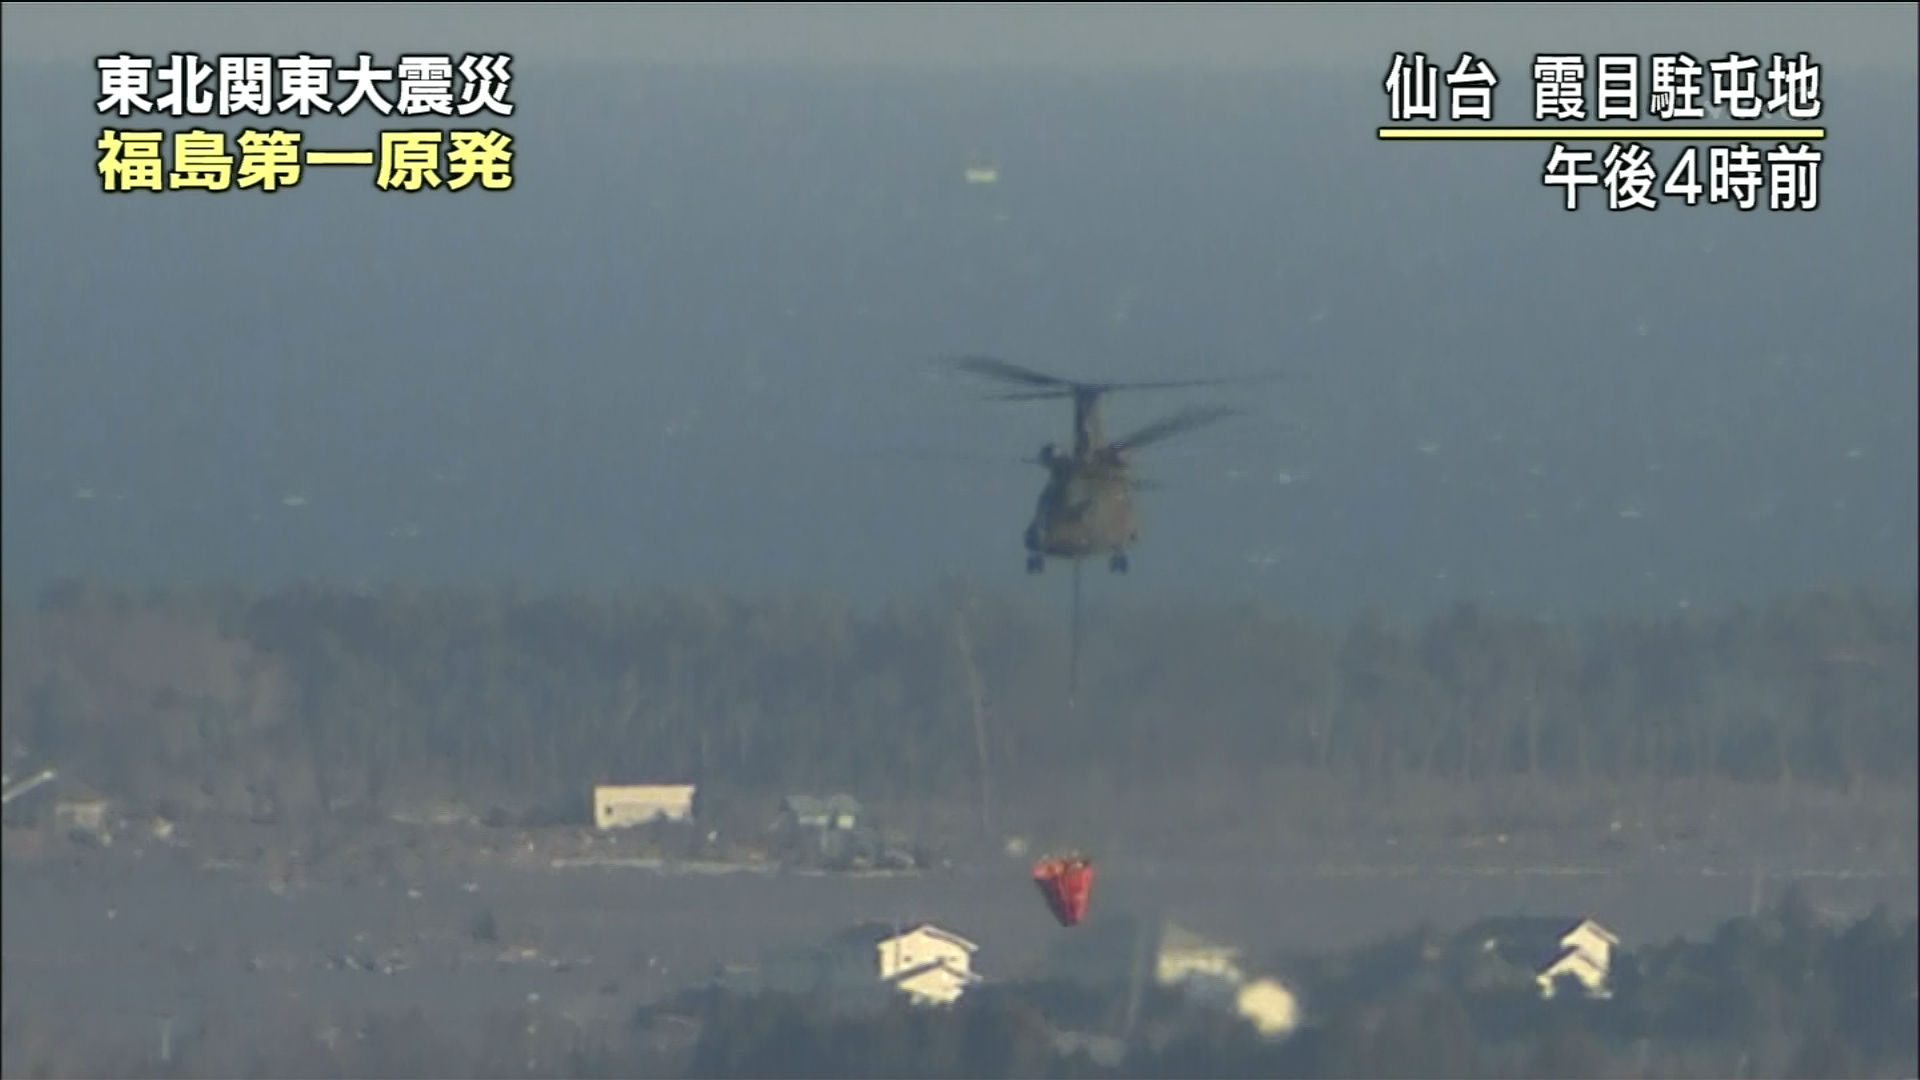 自衛隊ヘリが水投下のために福島第一原発へ Gigazine